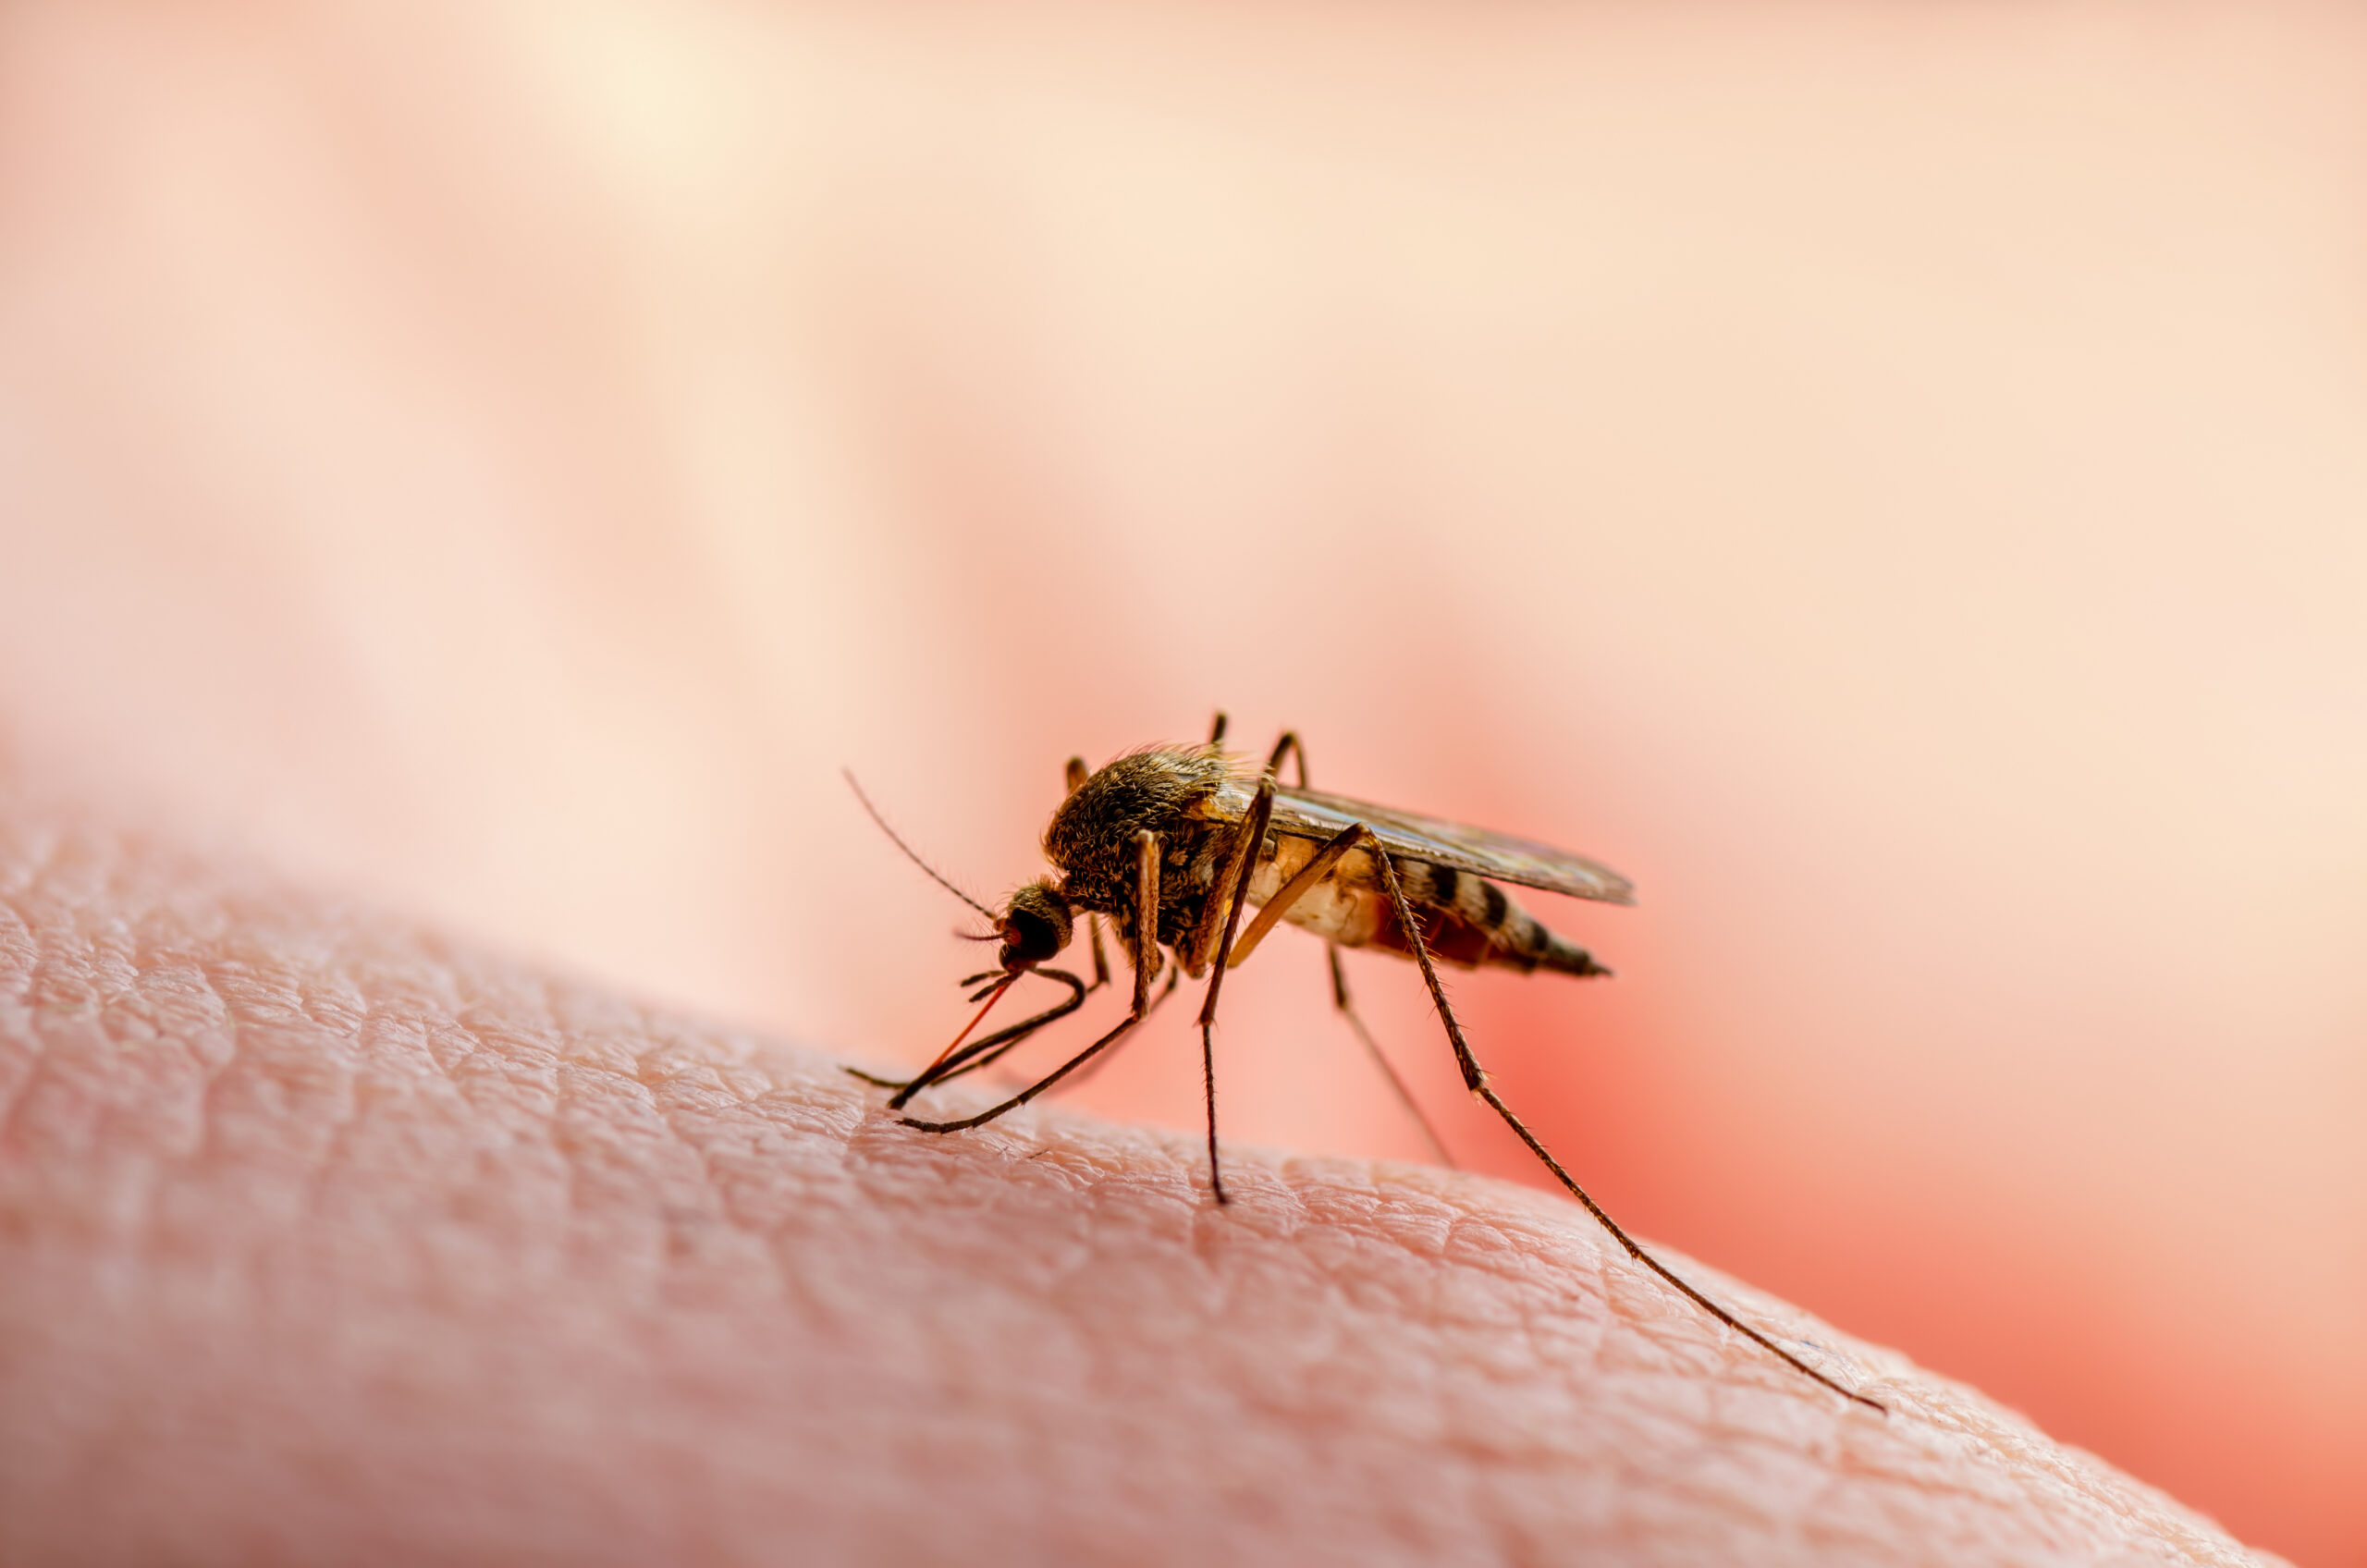 Une équipe de recherche a peut-être découvert un moyen pour éviter les piqûres de moustiques